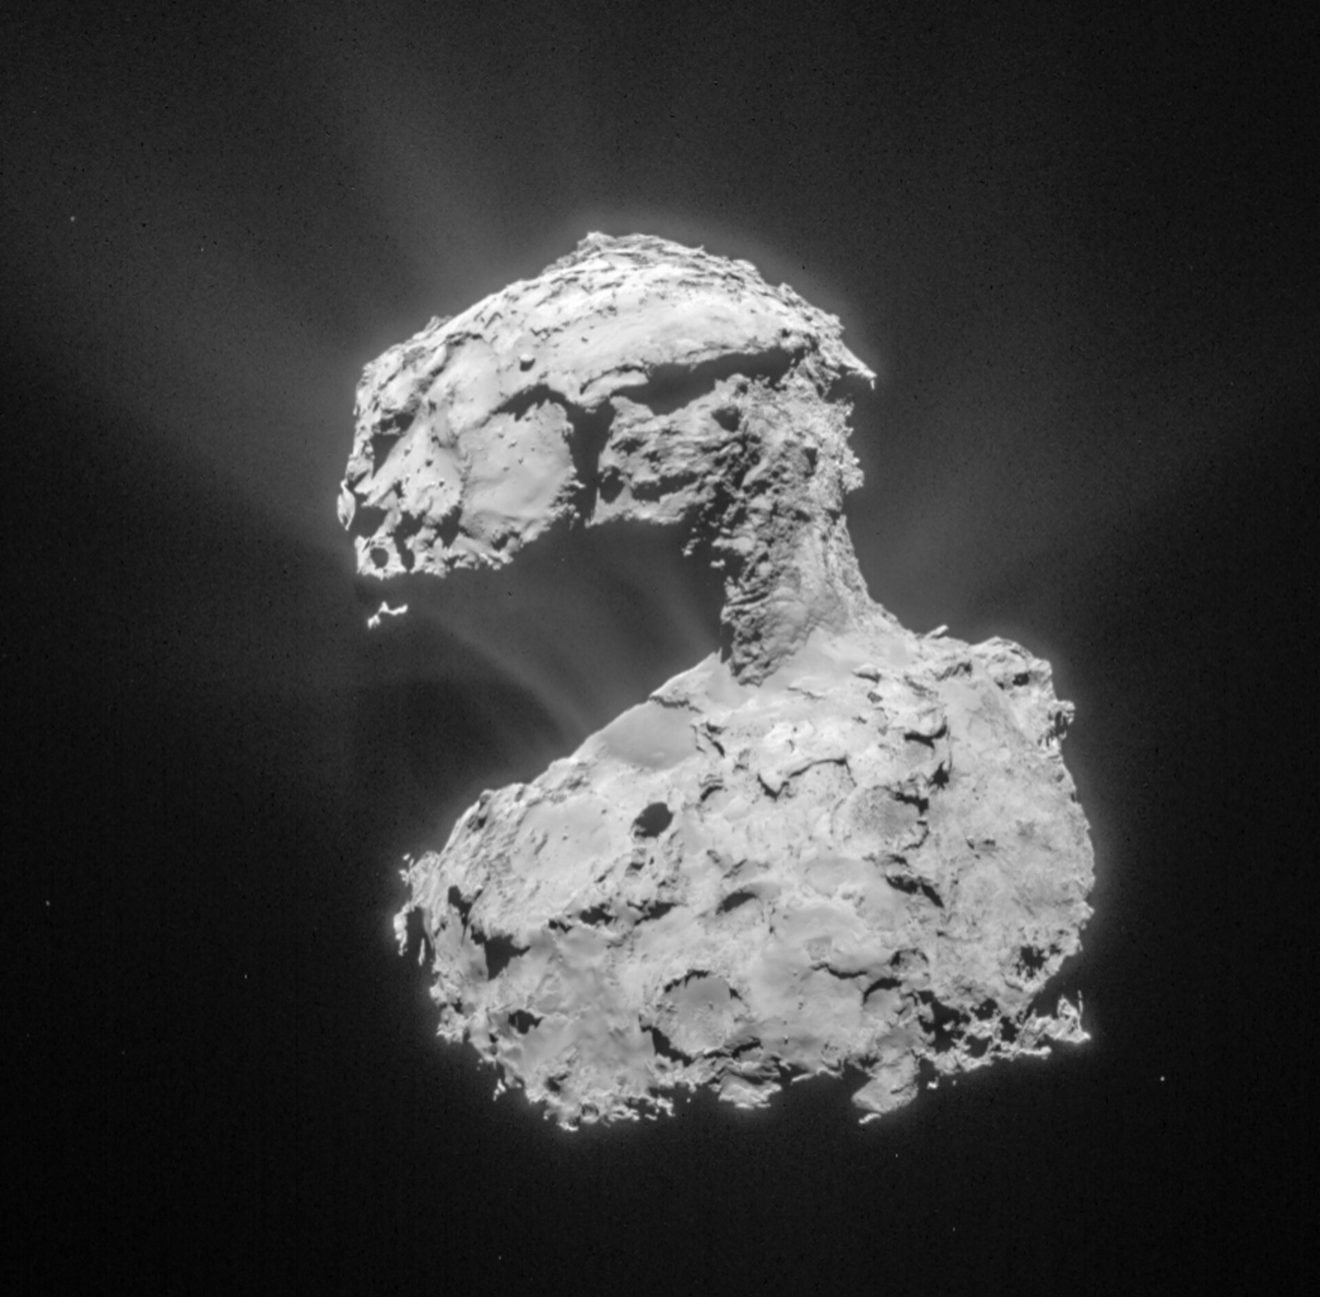 Fosfor in vaste vorm ontdekt op komeet 67P/Churyumov–Gerasimenko - dat maakt 't CHNOPS rijtje compleet!